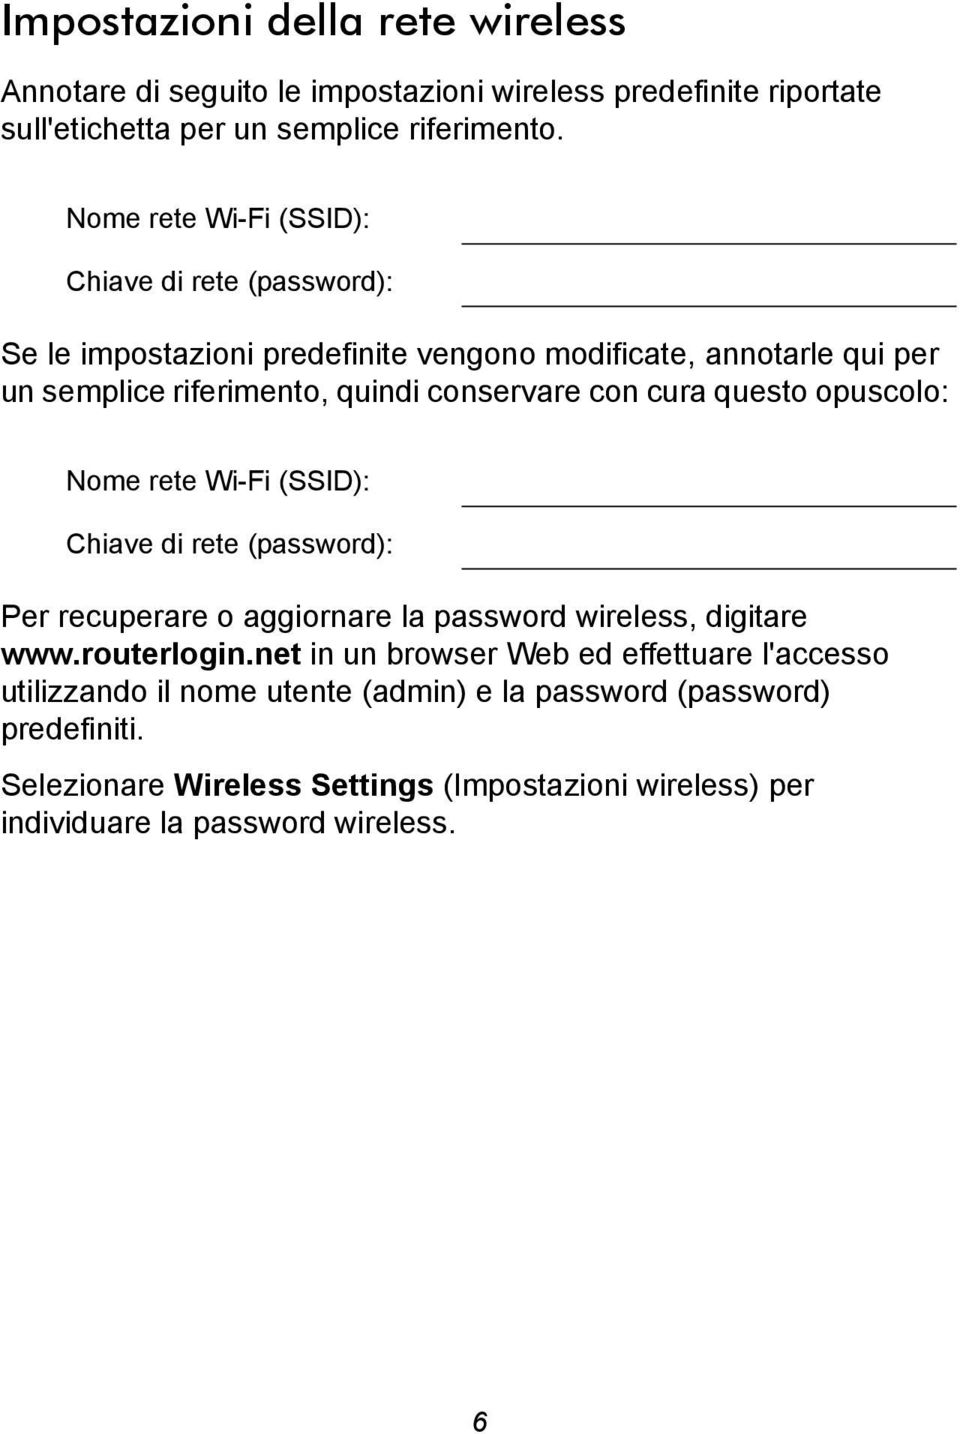 cura questo opuscolo: Nome rete Wi-Fi (SSID): Chiave di rete (password): Per recuperare o aggiornare la password wireless, digitare www.routerlogin.